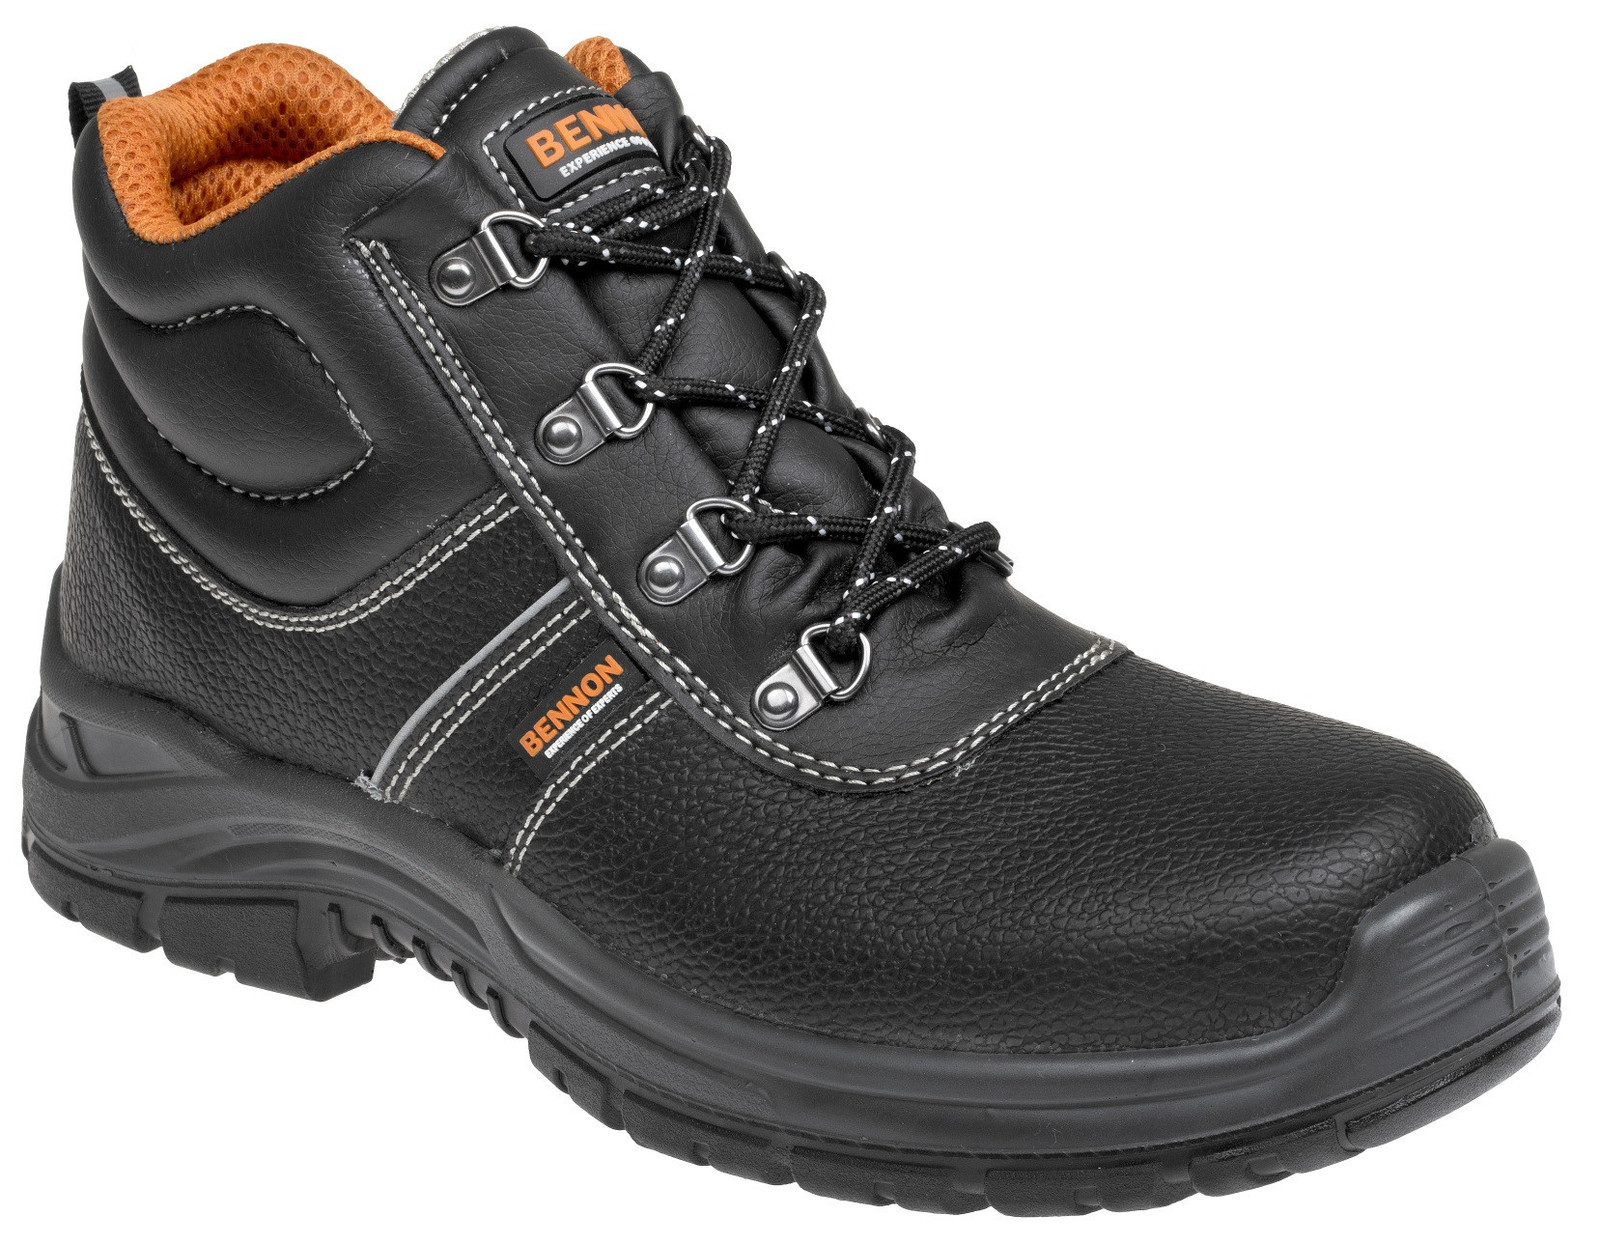 Bezpečnostná obuv Bennon Basic S3 - veľkosť: 39, farba: čierna